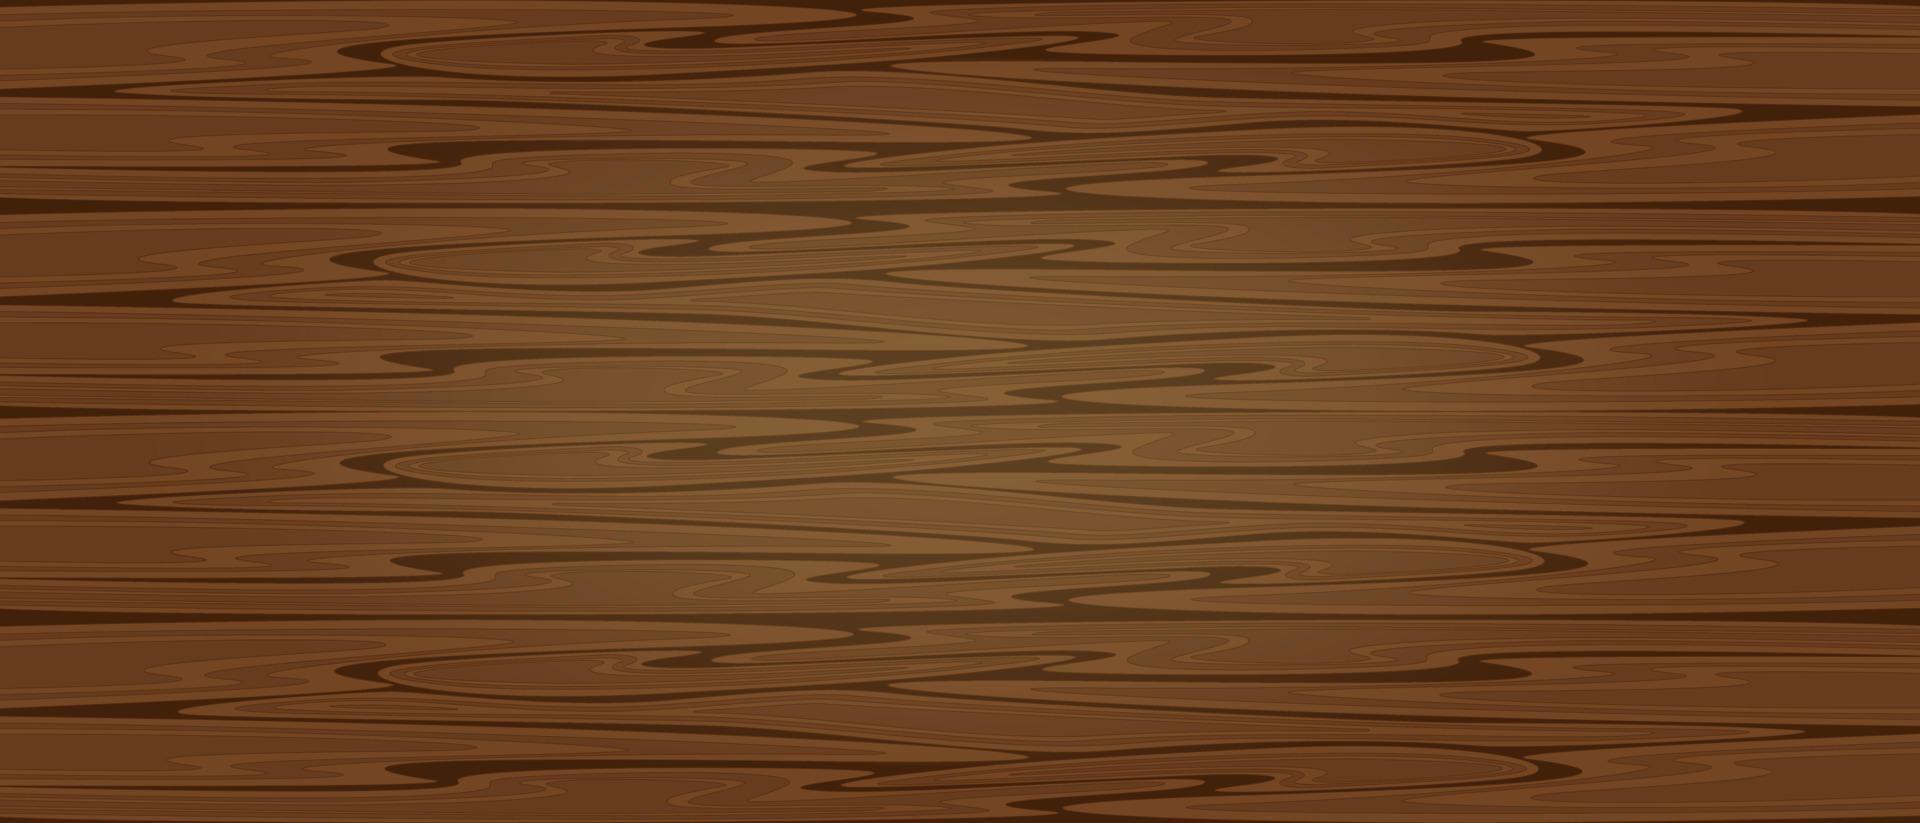 Fondo de vector de textura marrón madera. diseño de textura de tablero de corte de madera, pared, mesa o superficie del suelo. plantilla de mesa de madera.